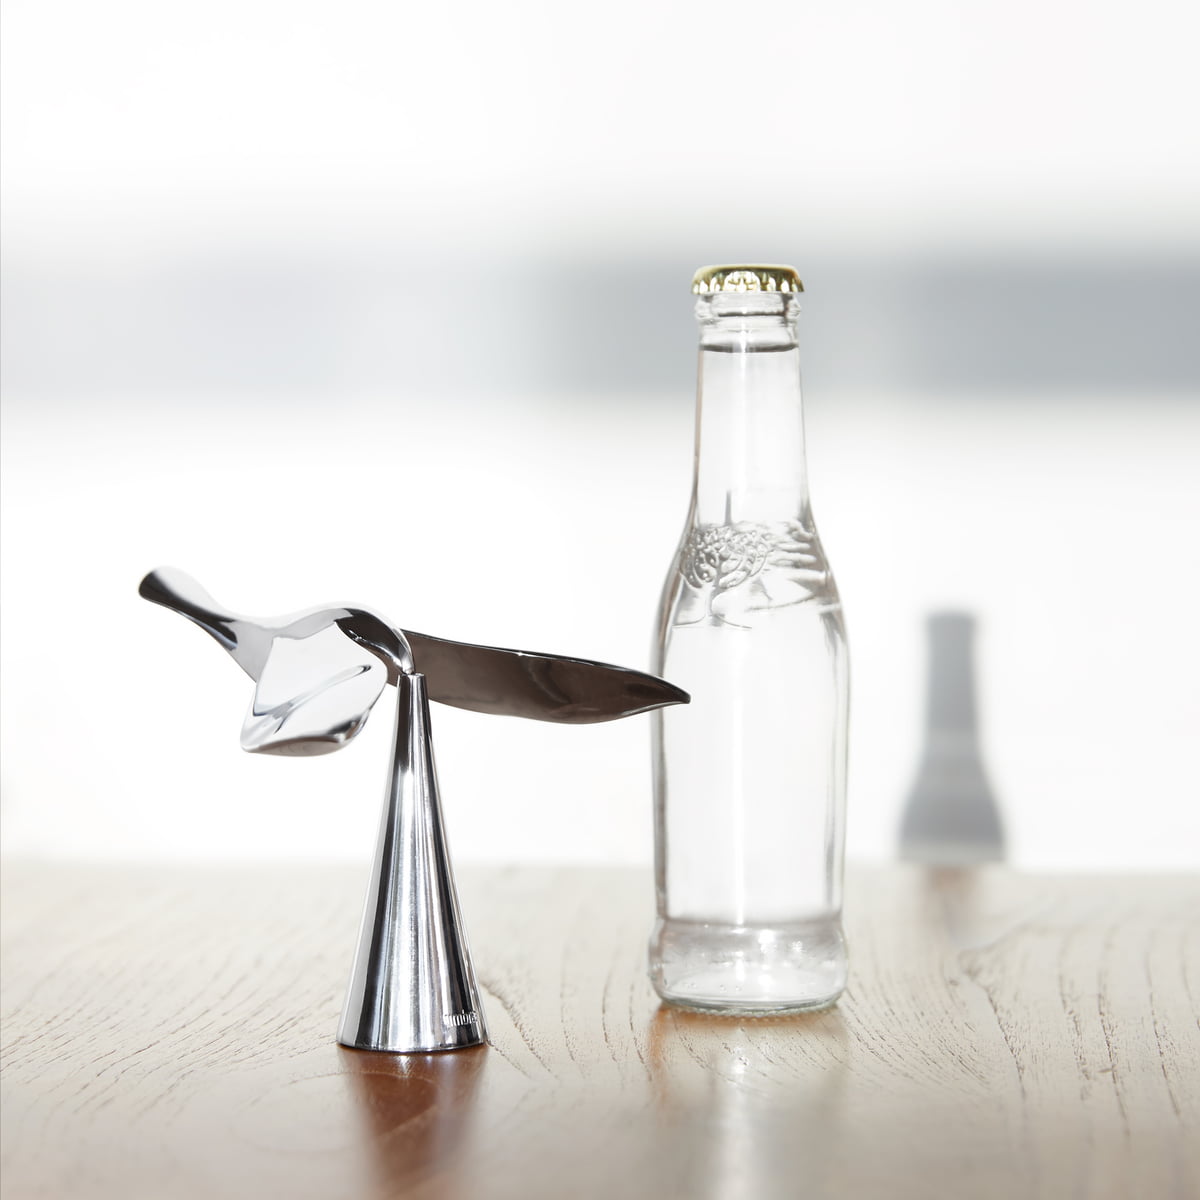 Umbra - Tipsy bottle opener